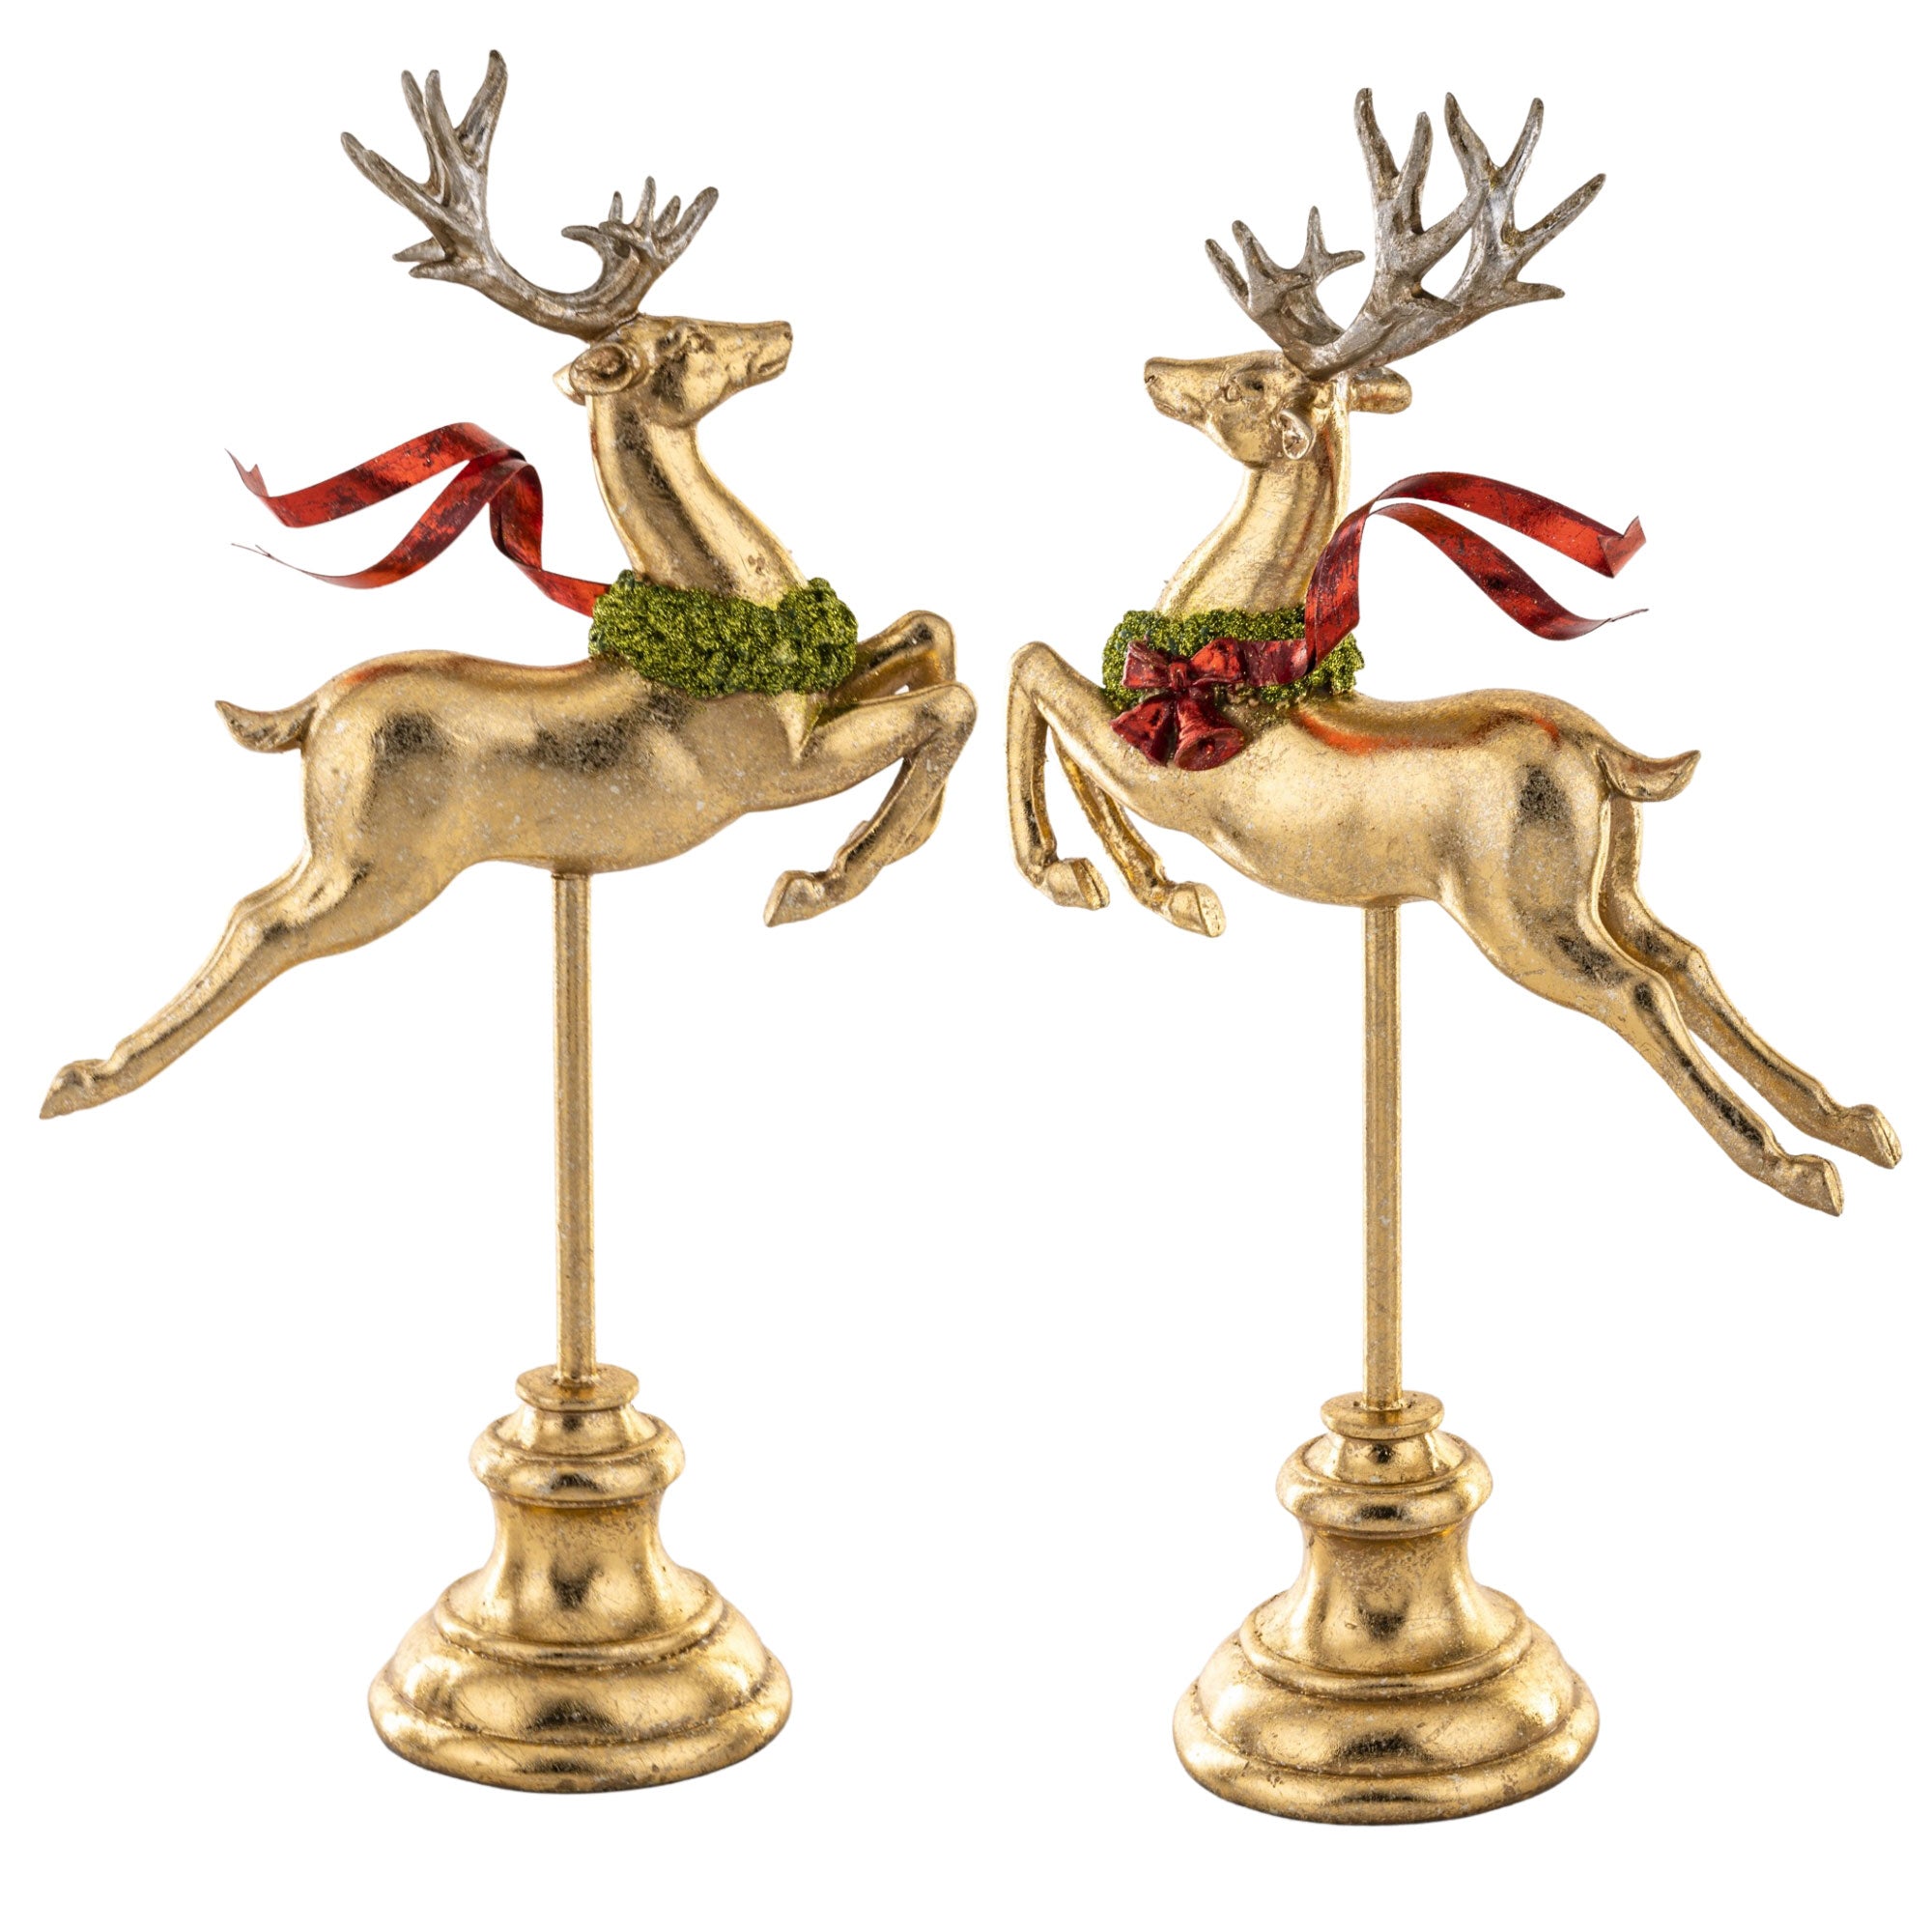 Piros színű fémmasnival díszített, fényes felületű, arany színű karácsonyi szarvas figura.